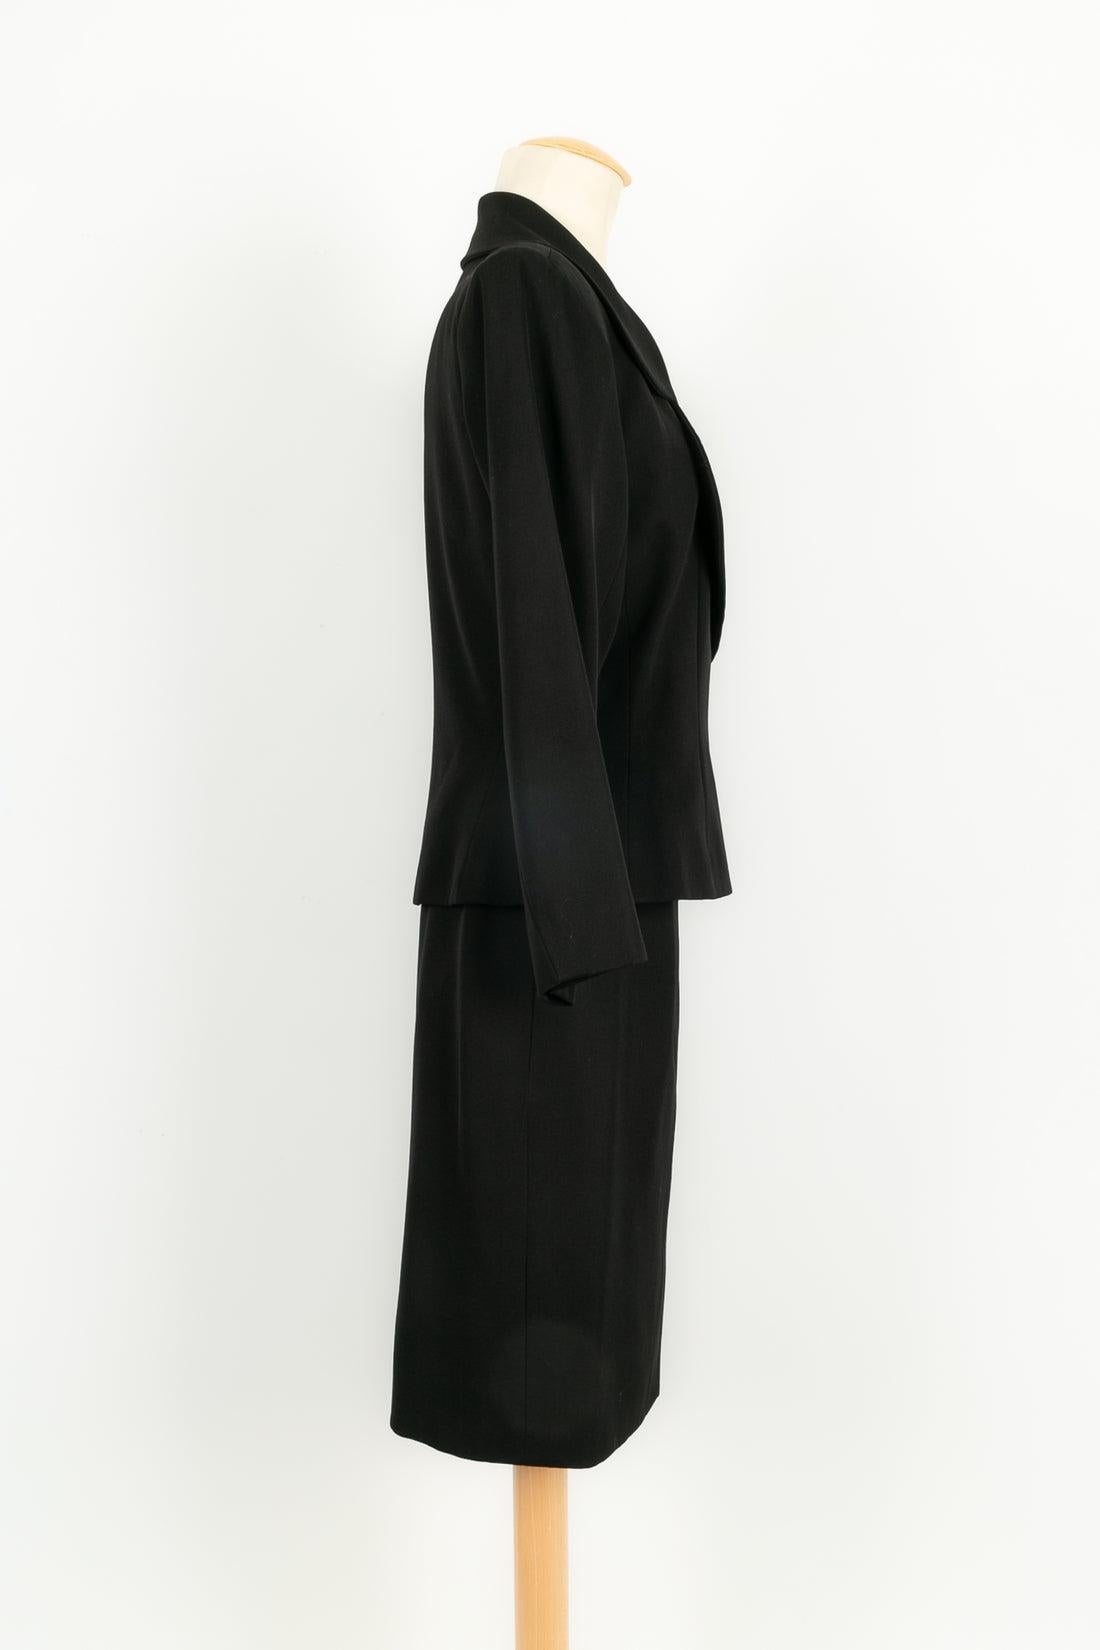 Yves Saint Laurent - (Made in France) Black skirt suit. Size 38FR.

Additional information: 
Dimensions: Jacket: Shoulder width: 43 cm, Sleeve length: 54 cm, Length: 57 cm 
Skirt: Size: 35 cm, Length: 57 cm
Condition: Very good condition
Seller Ref